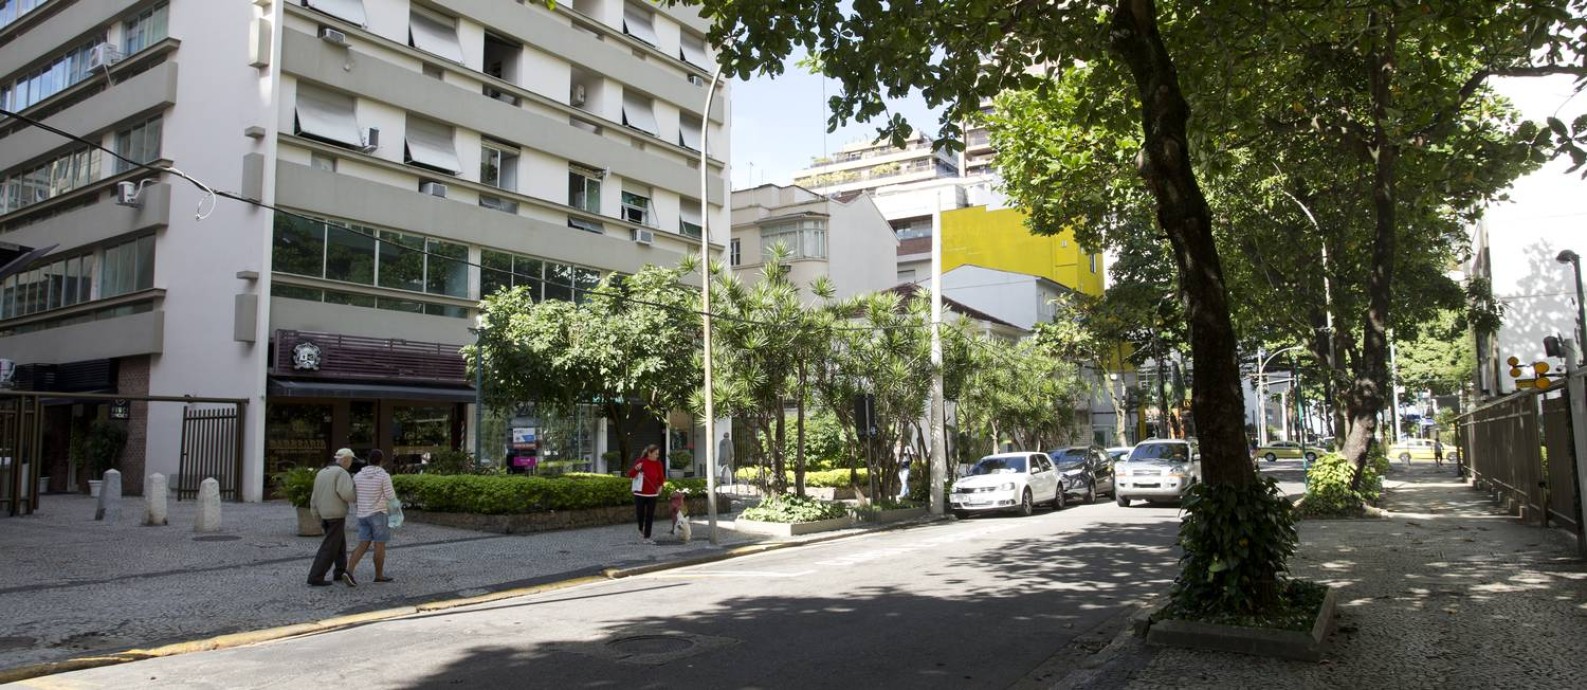 João Gilberto - Santos, São Paulo, Brazil